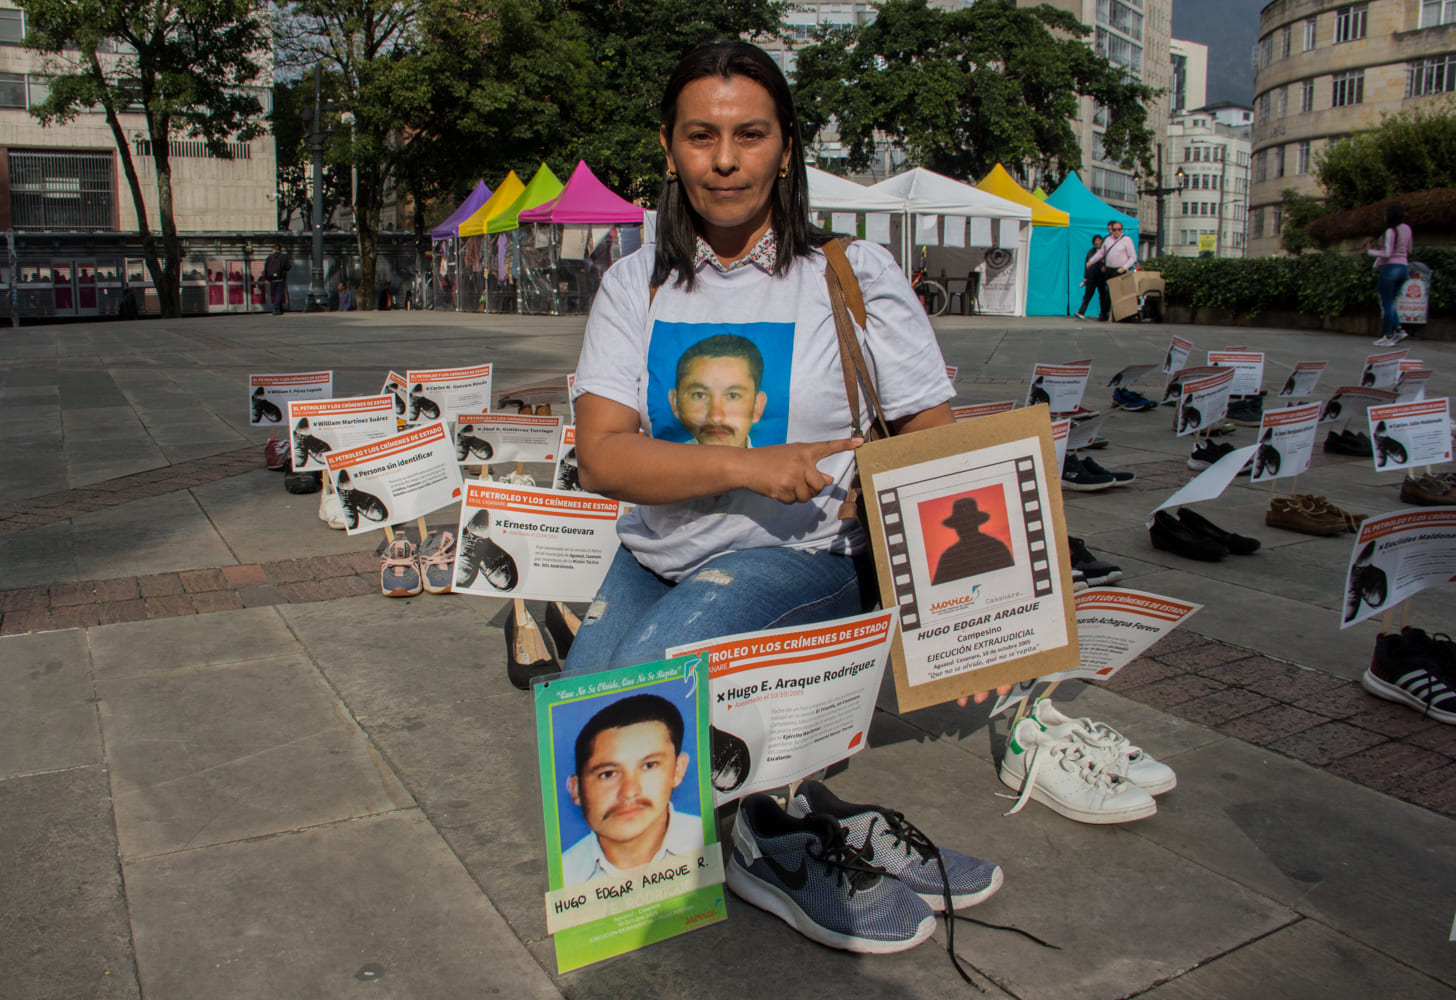 Derlly Patiño con la fotografía de su esposo Hugo Edgar Araque en el evento en el que se mostraron los datos de esta investigación en el centro de Bogotá. Foto: Juan Carlos Contreras.